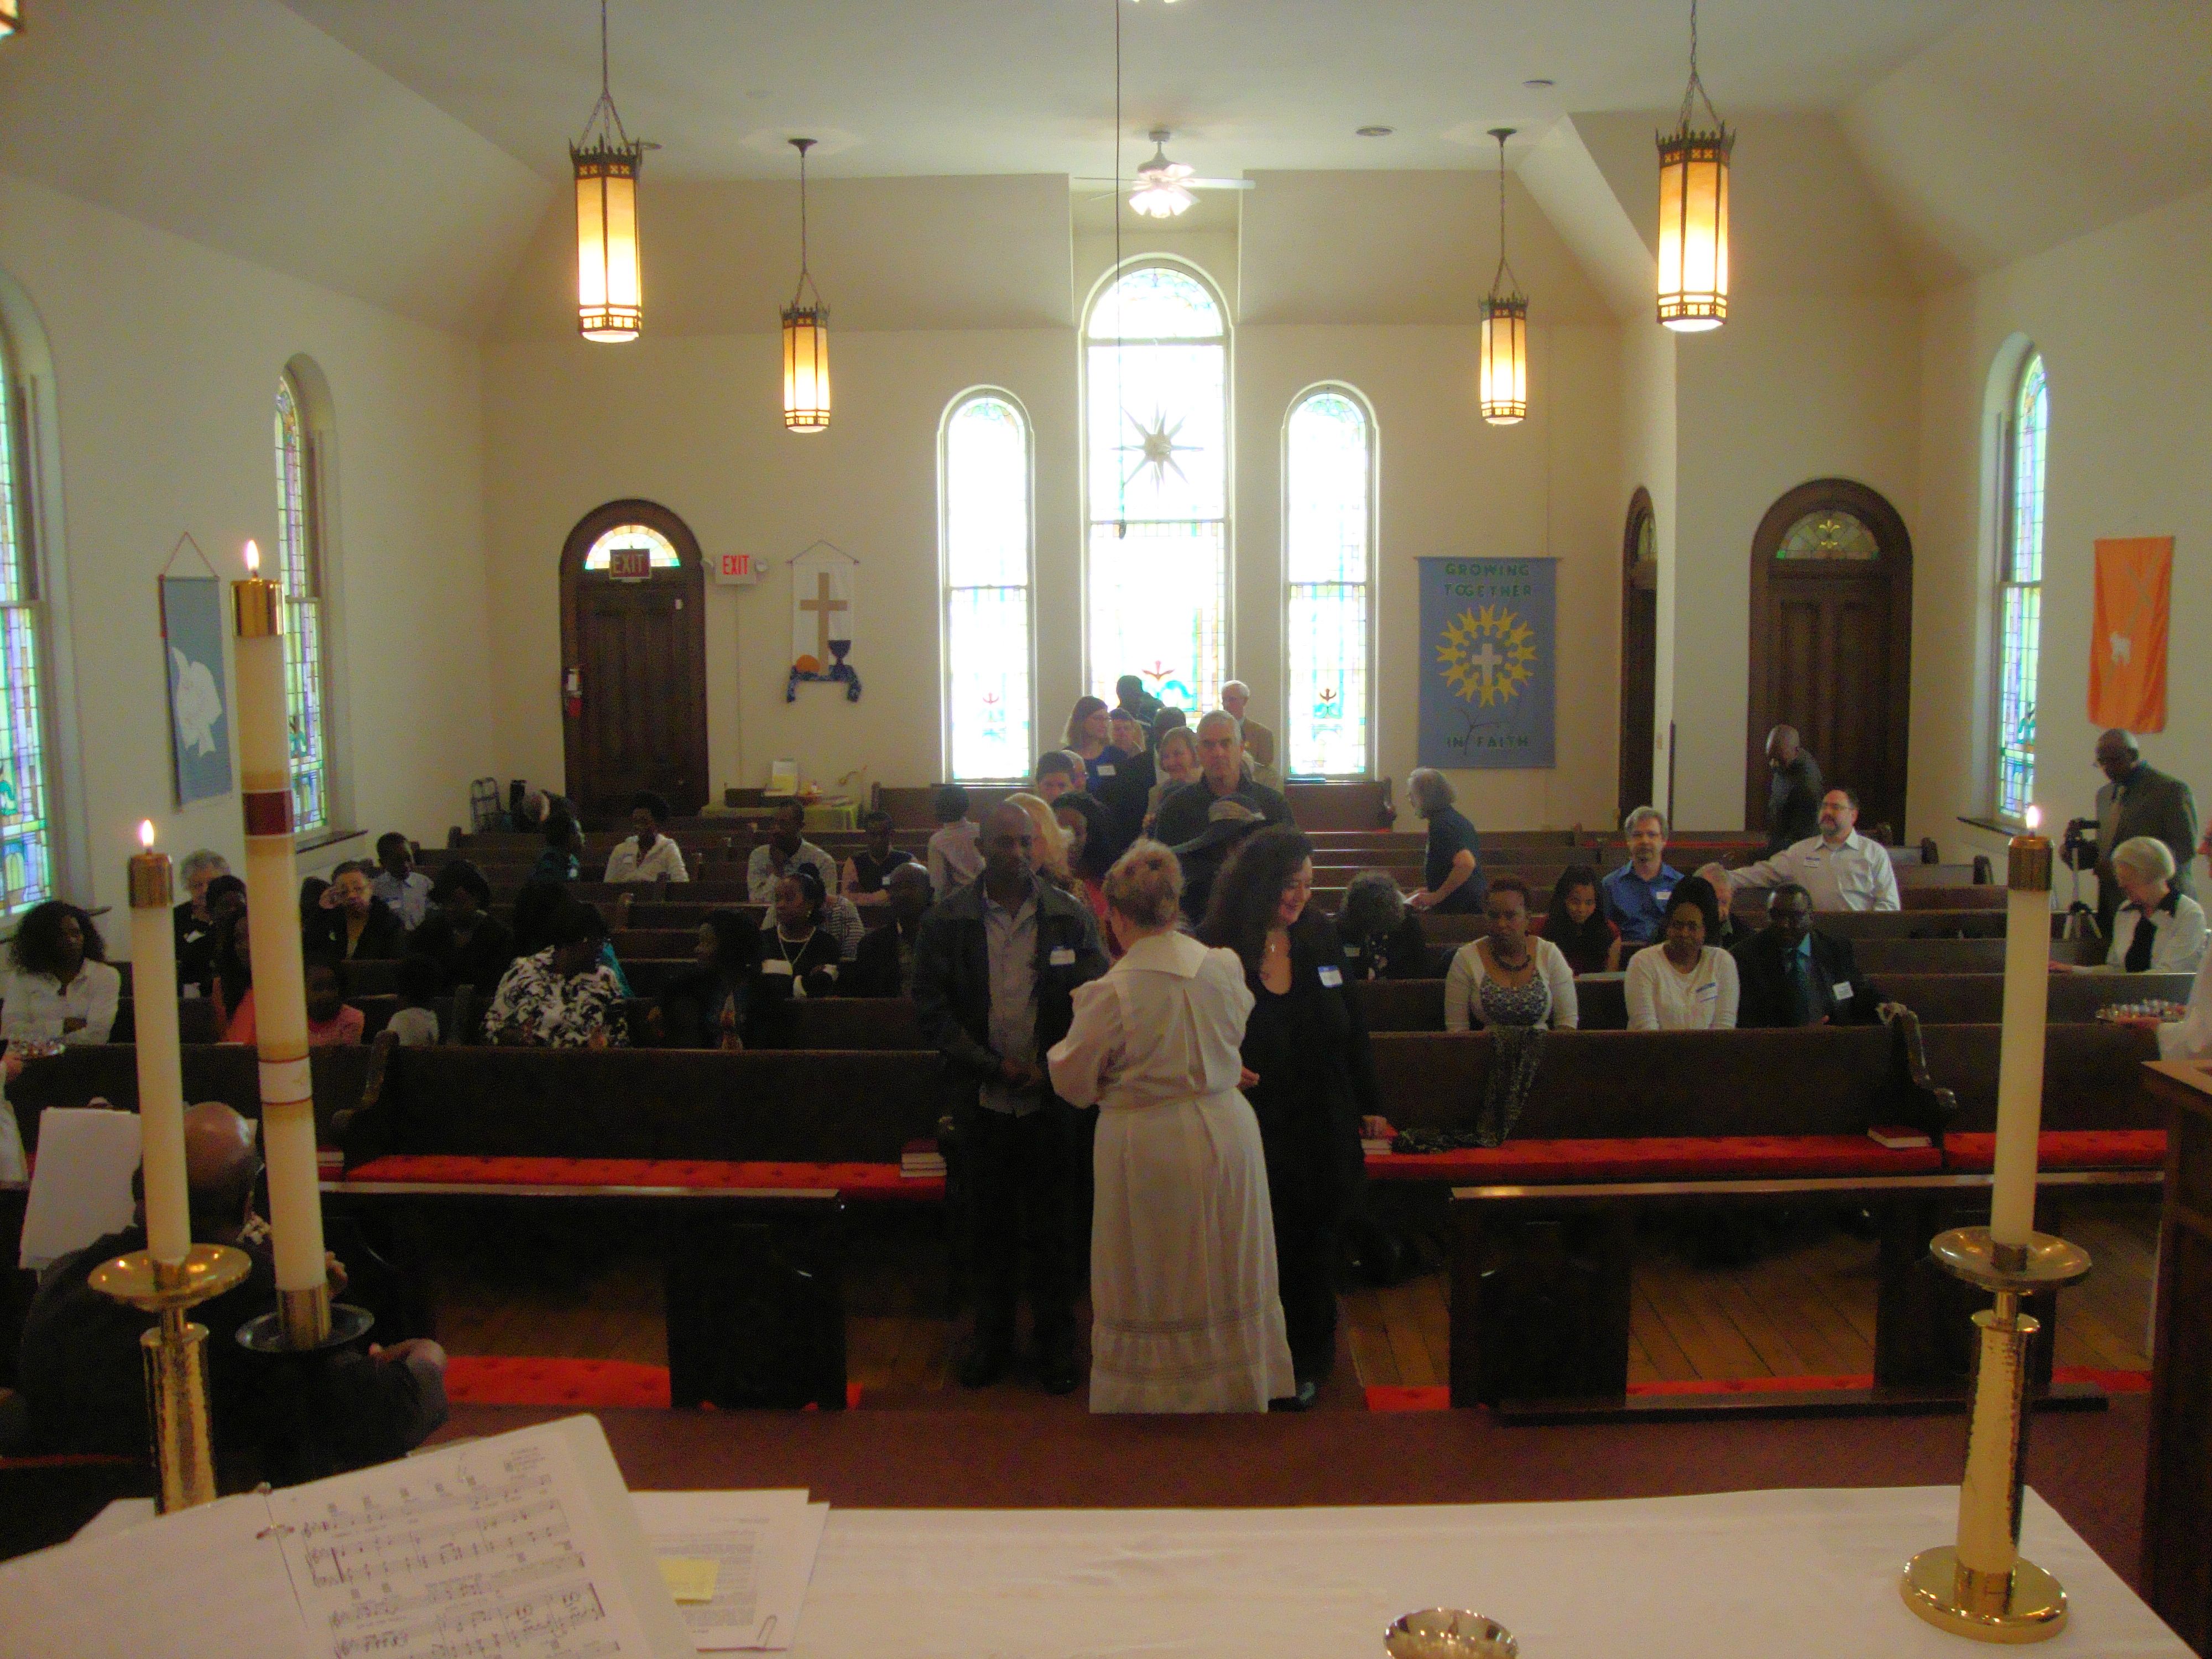 Pastor Bonnie's final service at Salem